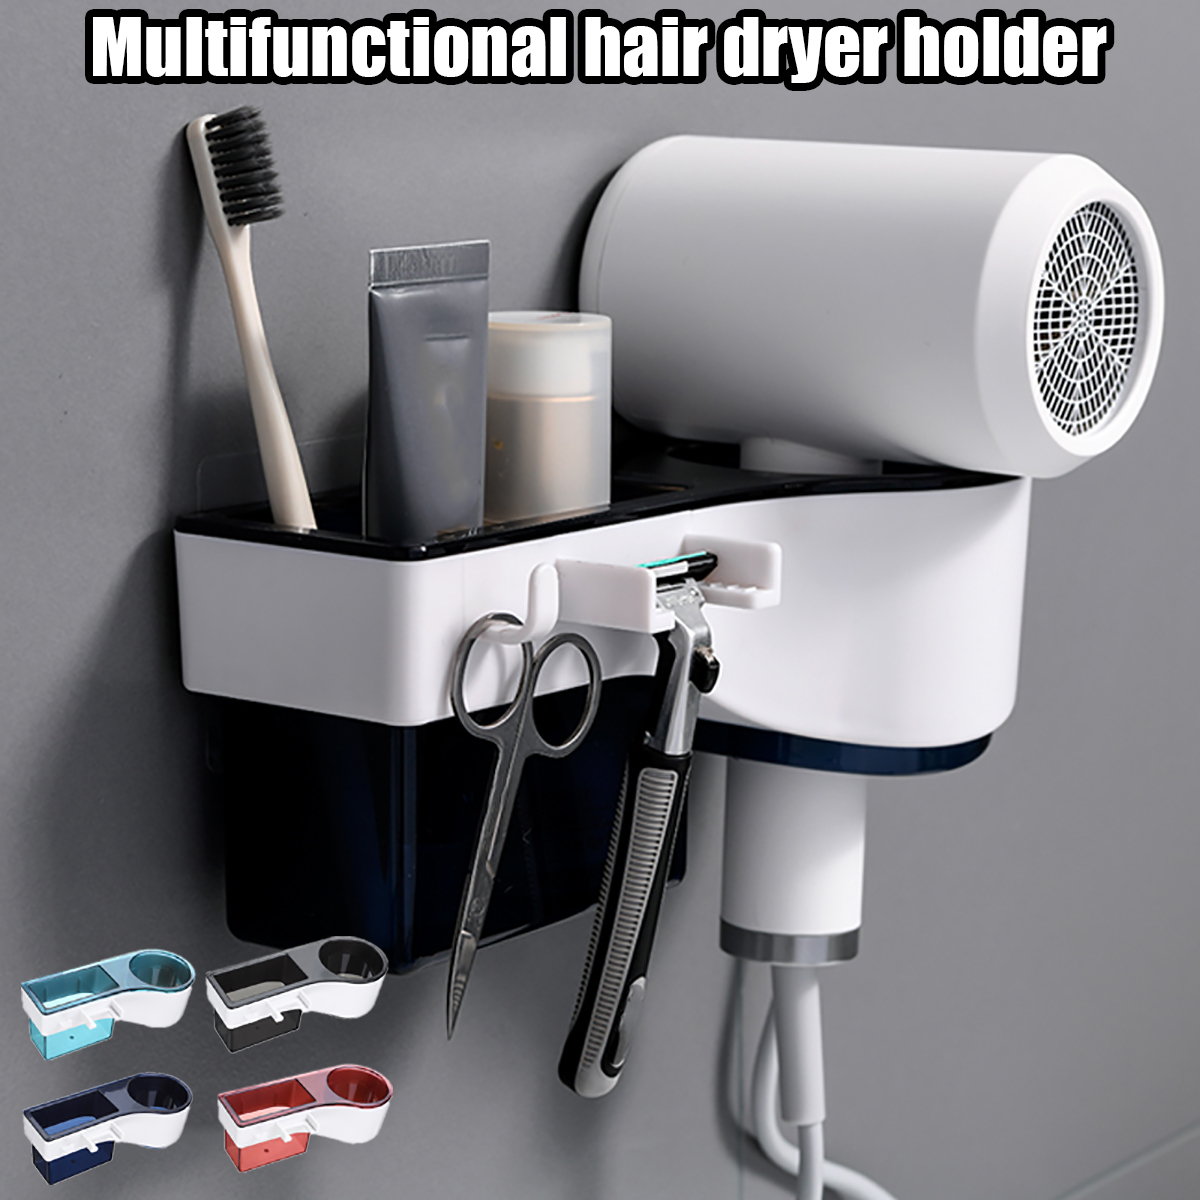 Hair-Dryer-Stand-Holder-Rack-Shelf-Wall-Mounted-Sticker-Bath-Storage-1784366-1